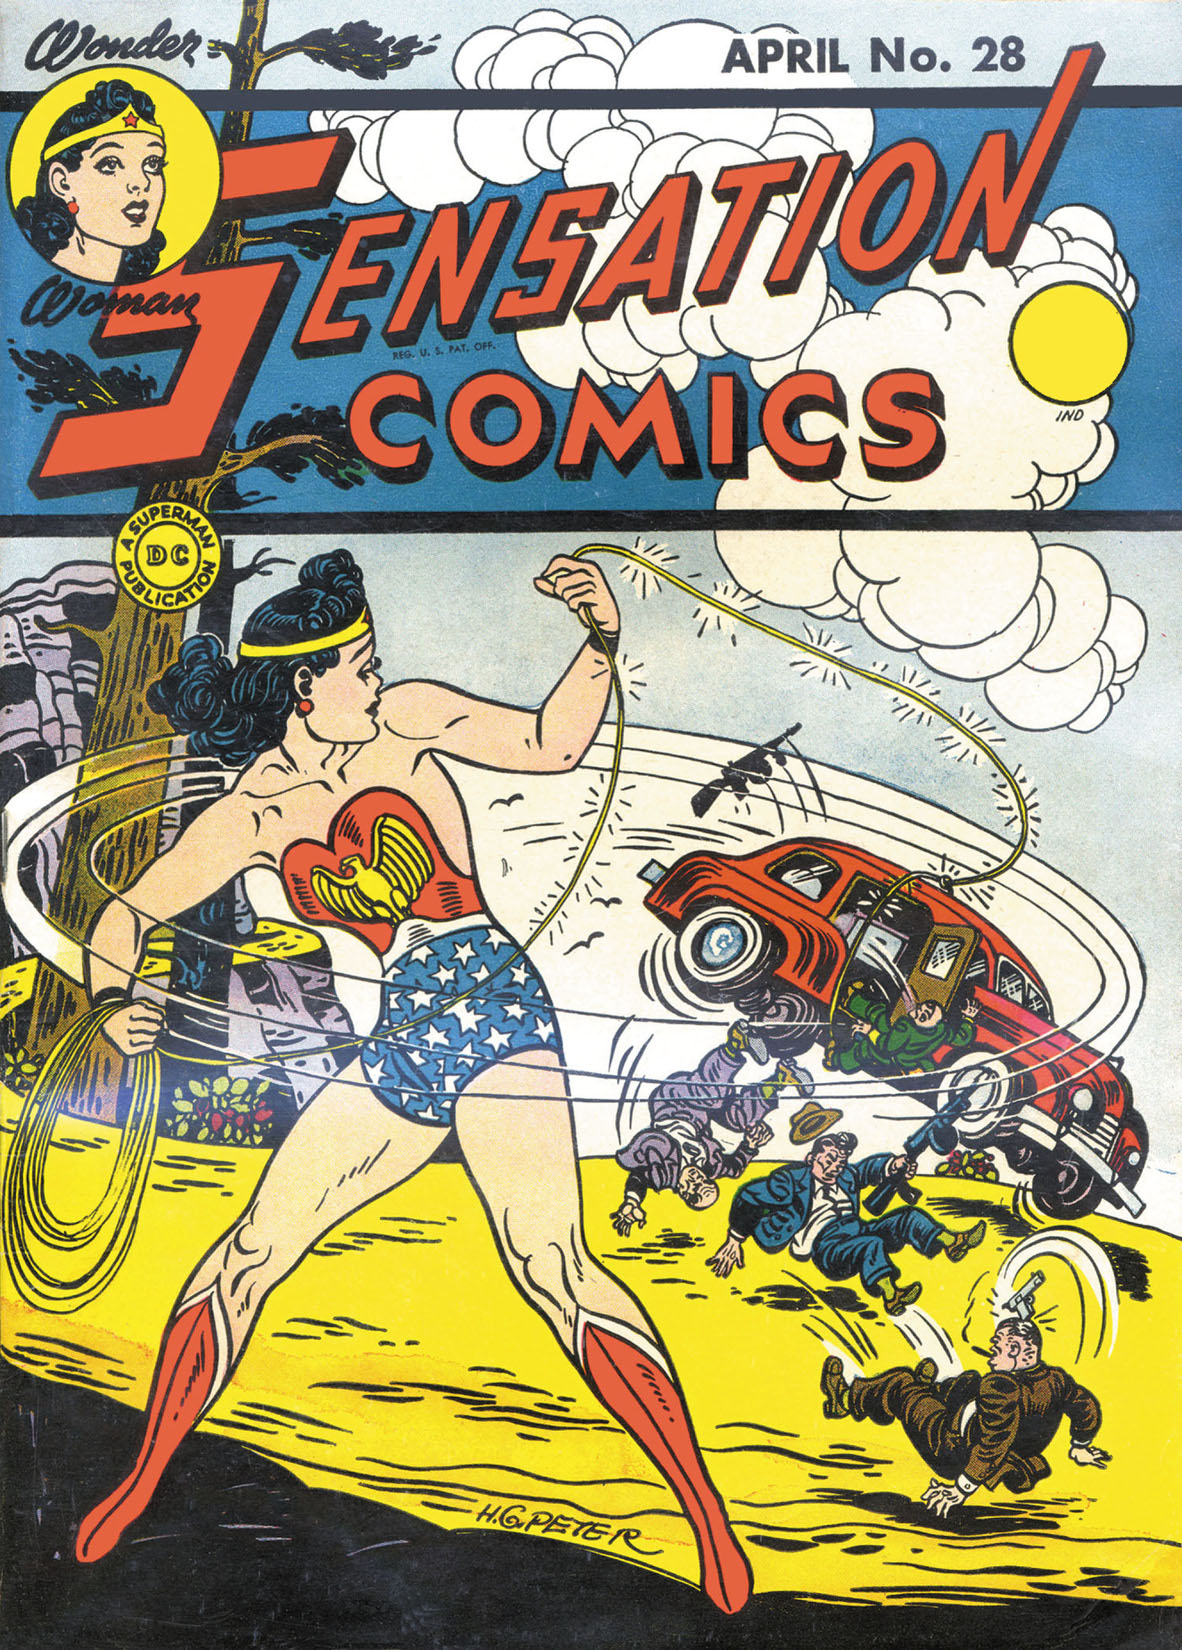 Sensation Comics #28 preview images